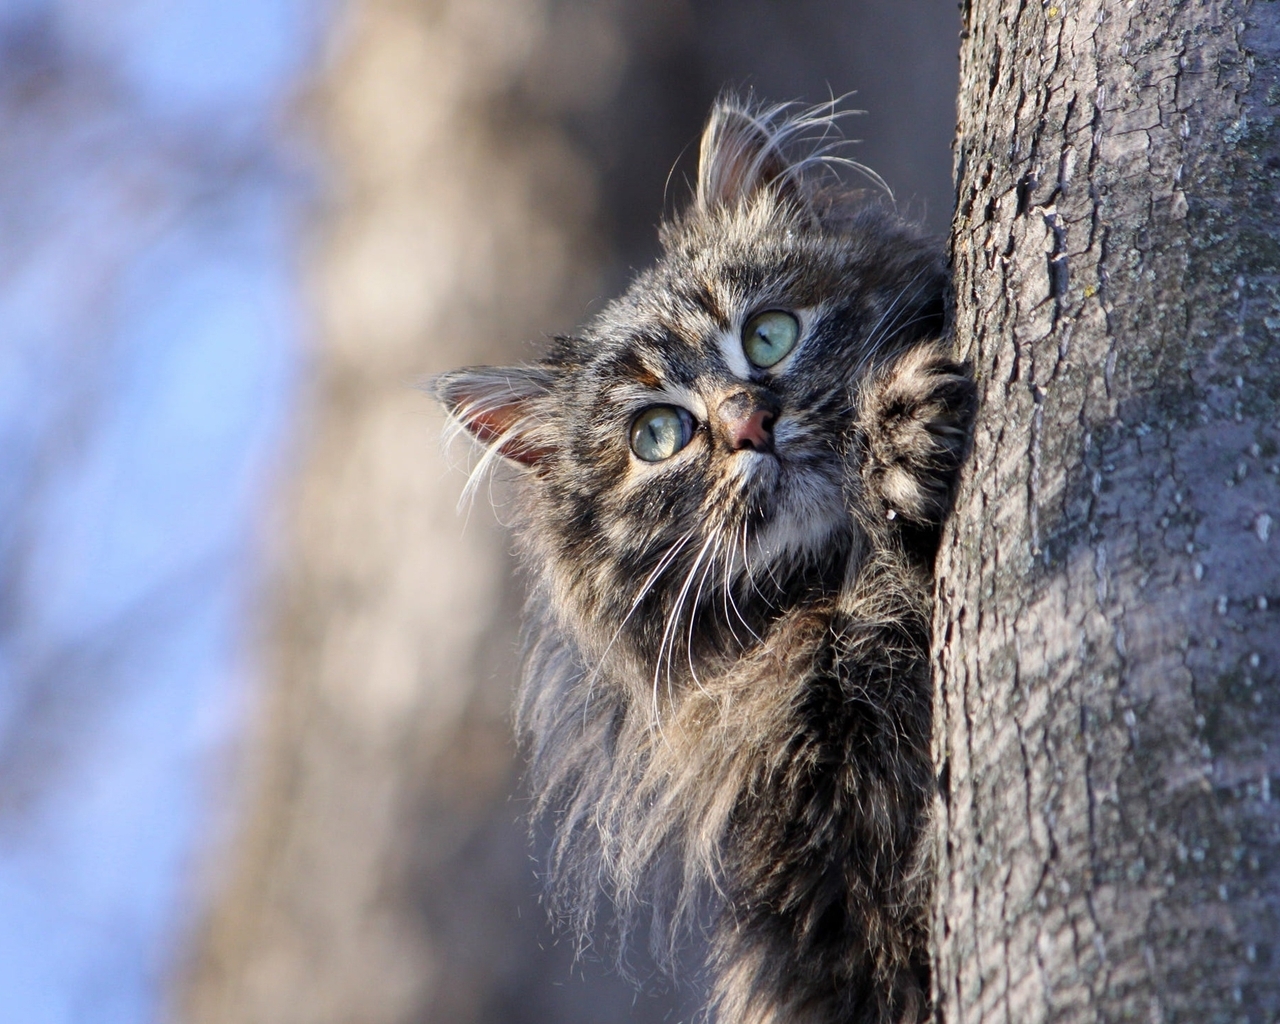 Картинка: Кошка, пушистая, мордочка, дерево, прячется